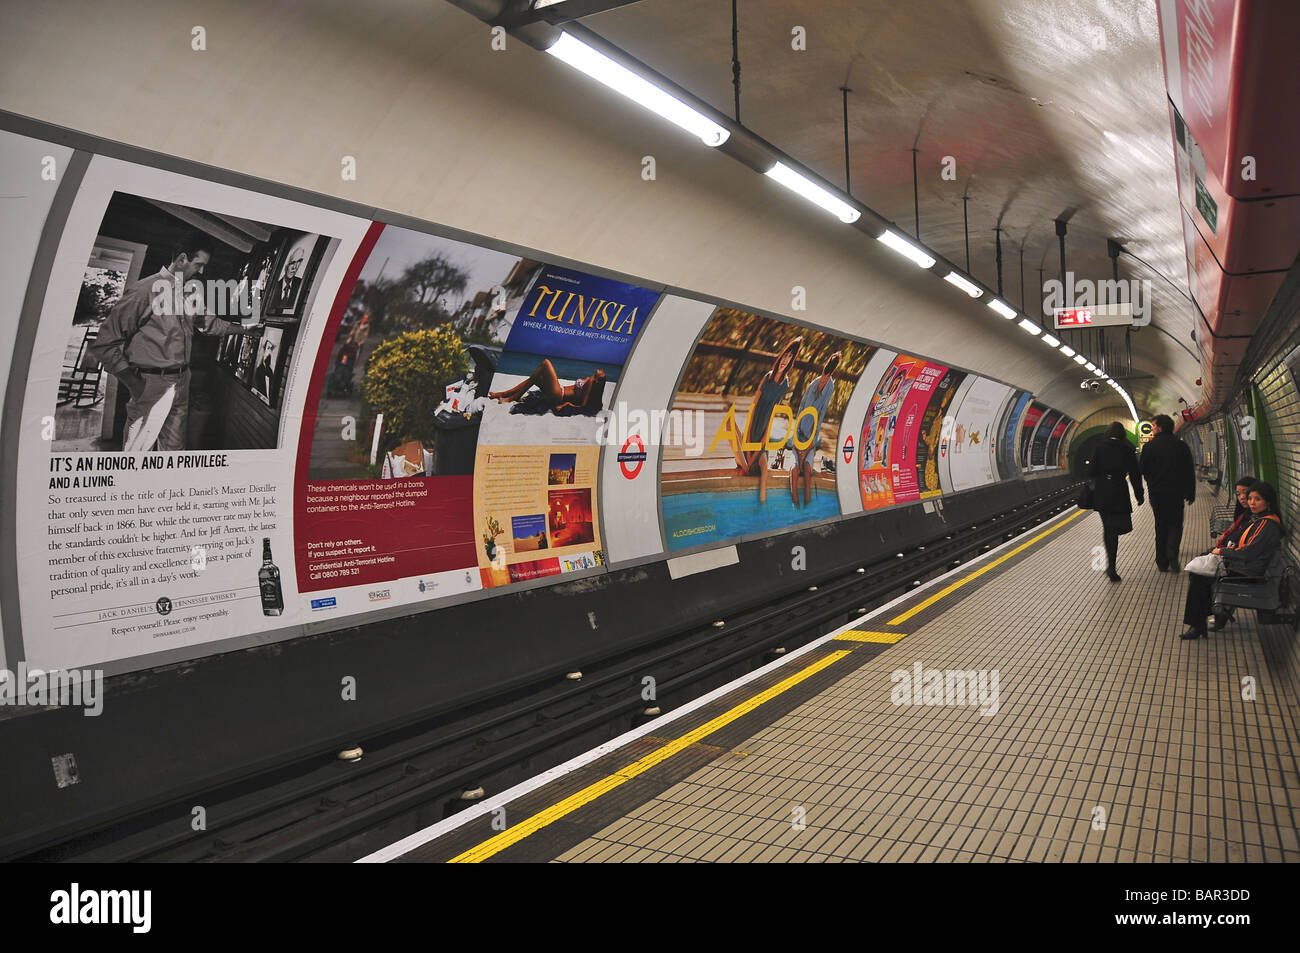 La station de métro Tottenham Court Road, Londres, Angleterre Banque D'Images